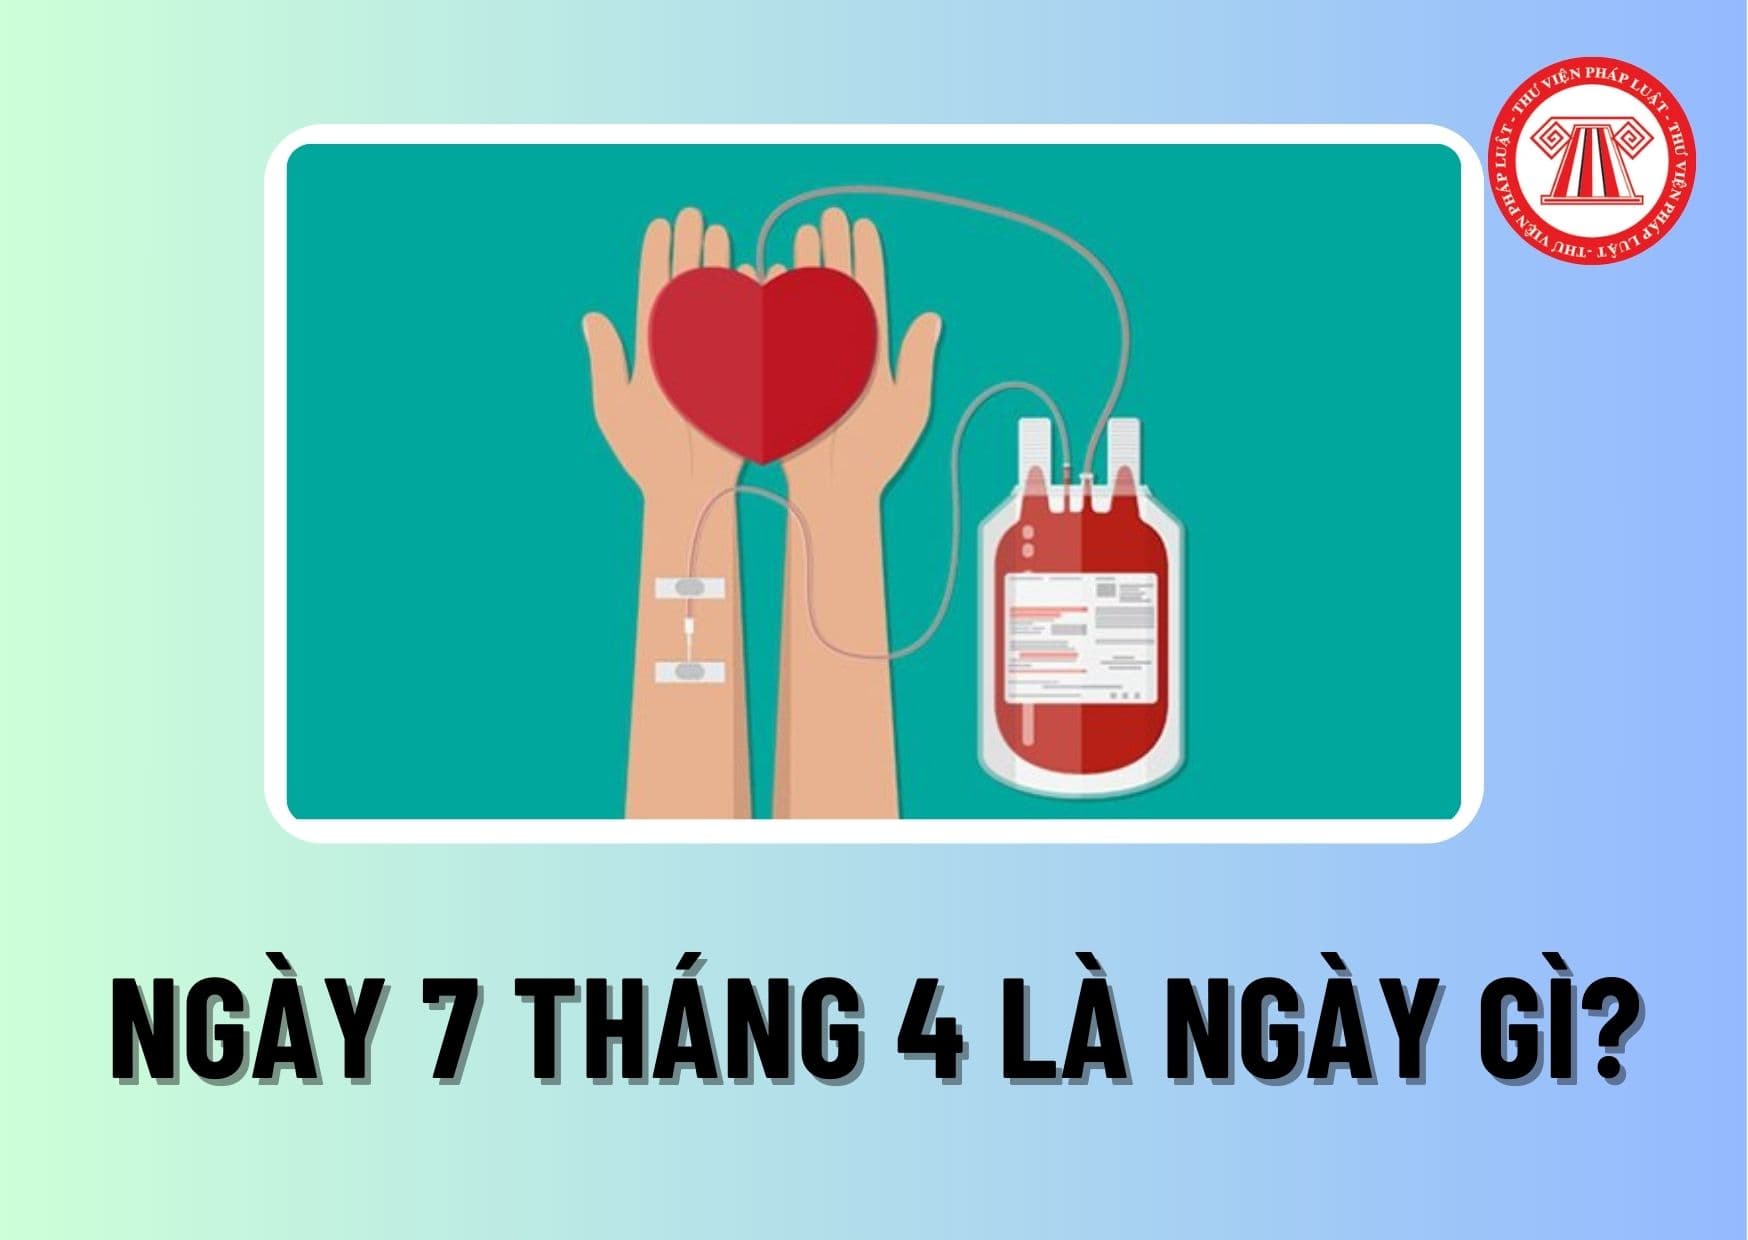 Ngày 7 tháng 4 là ngày gì? Ở Việt Nam, khuyến khích toàn dân hiến máu tình nguyện vào ngày 7/4 hàng năm đúng không?